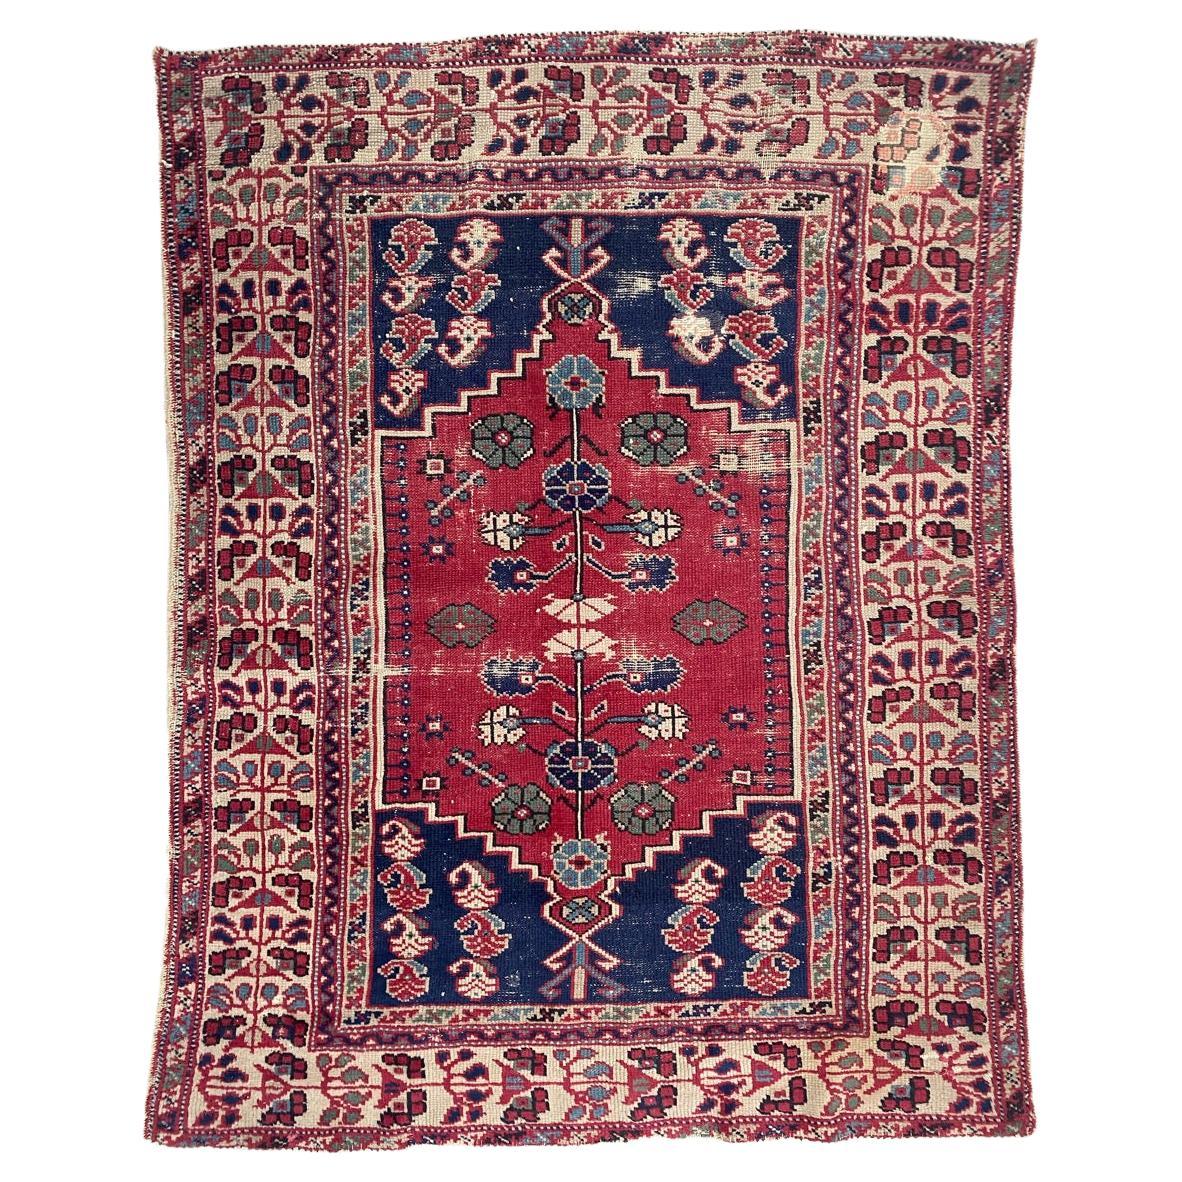 Joli tapis turc ancien de Bobyrug